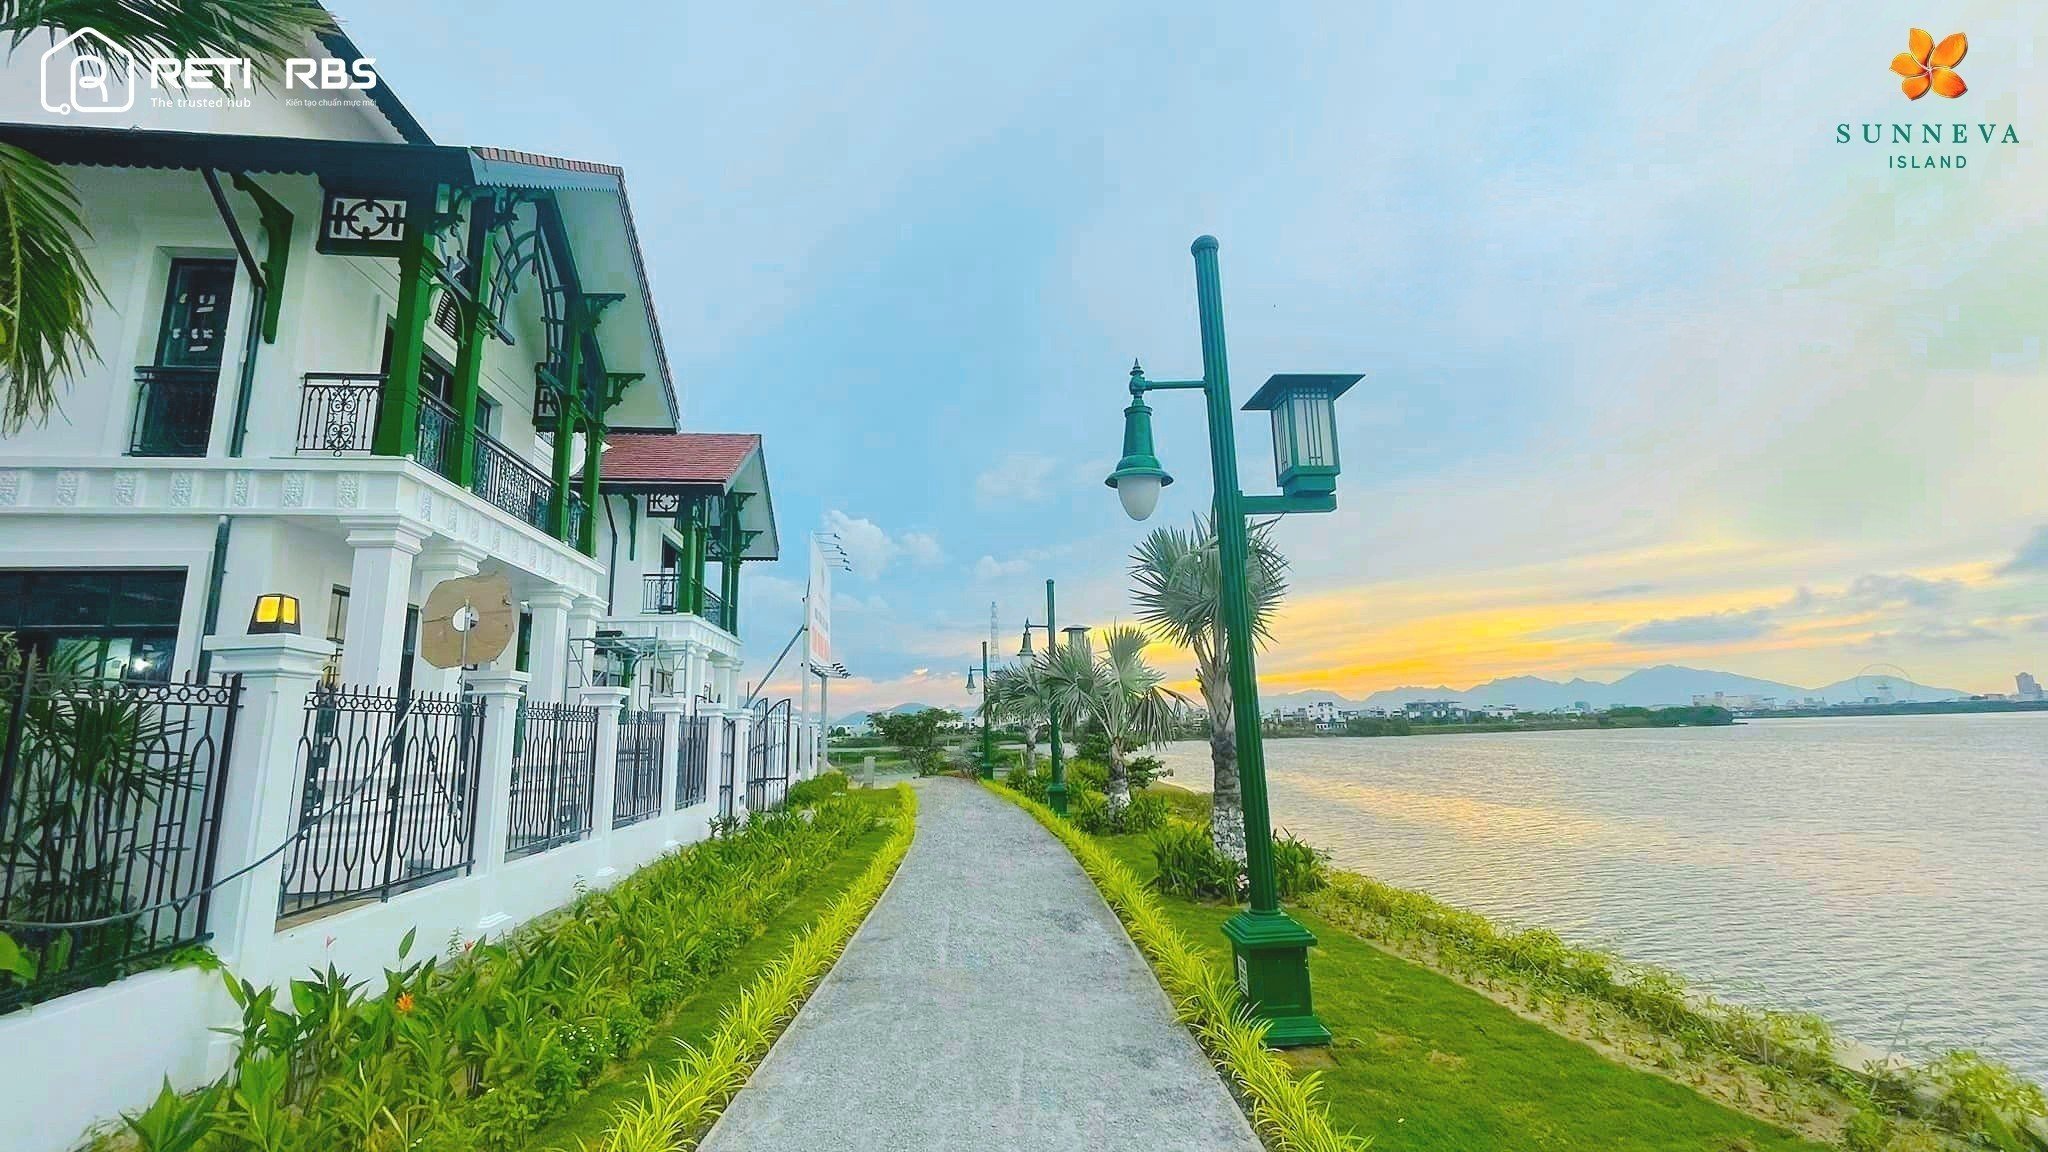 Chính sách Bán hàng và Tiến độ thanh toán dự án Sunneva Island Đà Nẵng 2